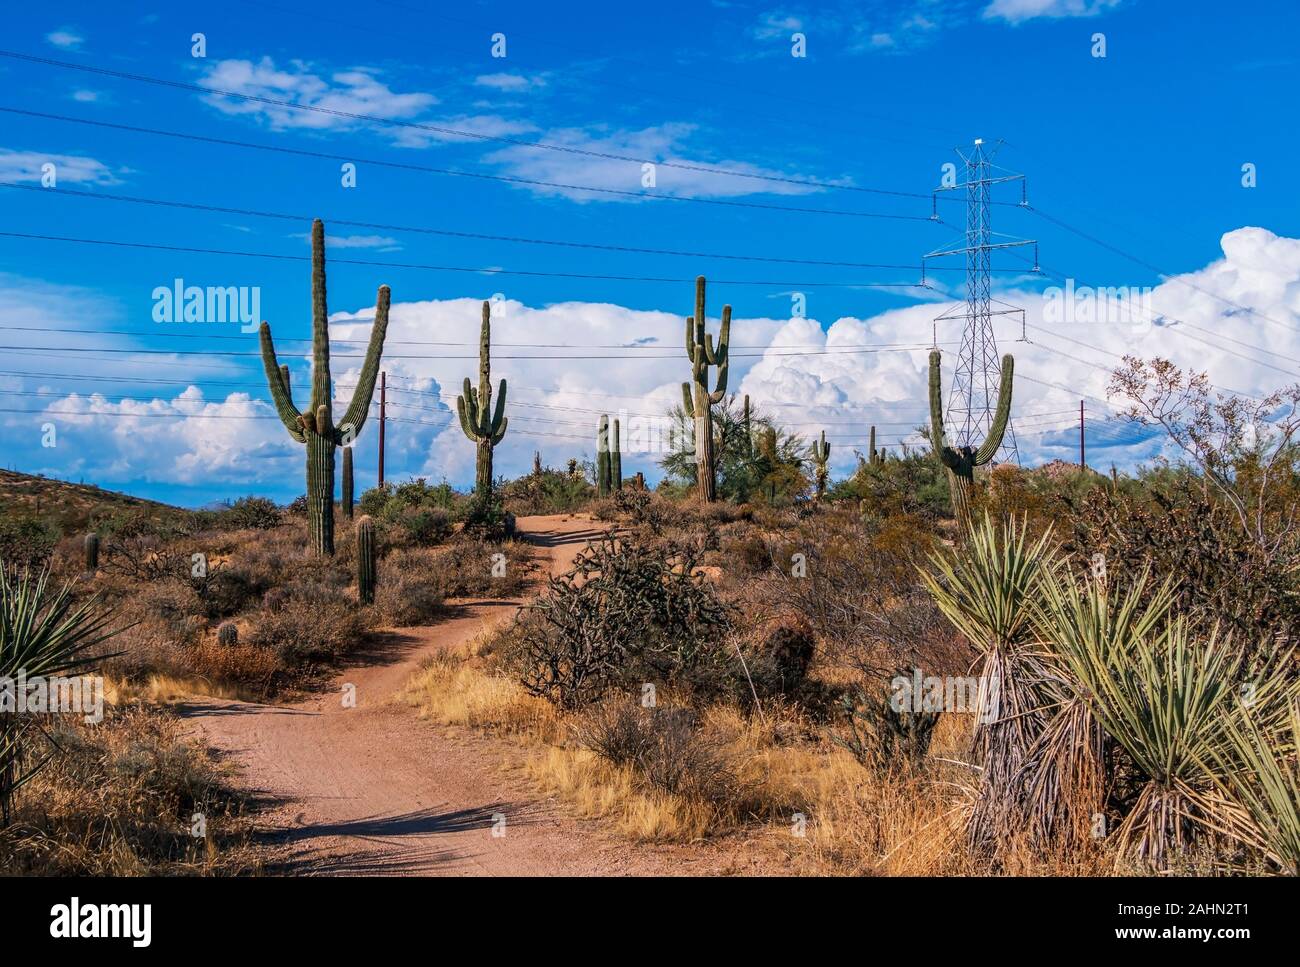 Wanderweg mit Saguaro Kaktus, Sturm, Wolken, und Stromleitungen in der AZ Wüste in der Nähe von Phoenix Stockfoto